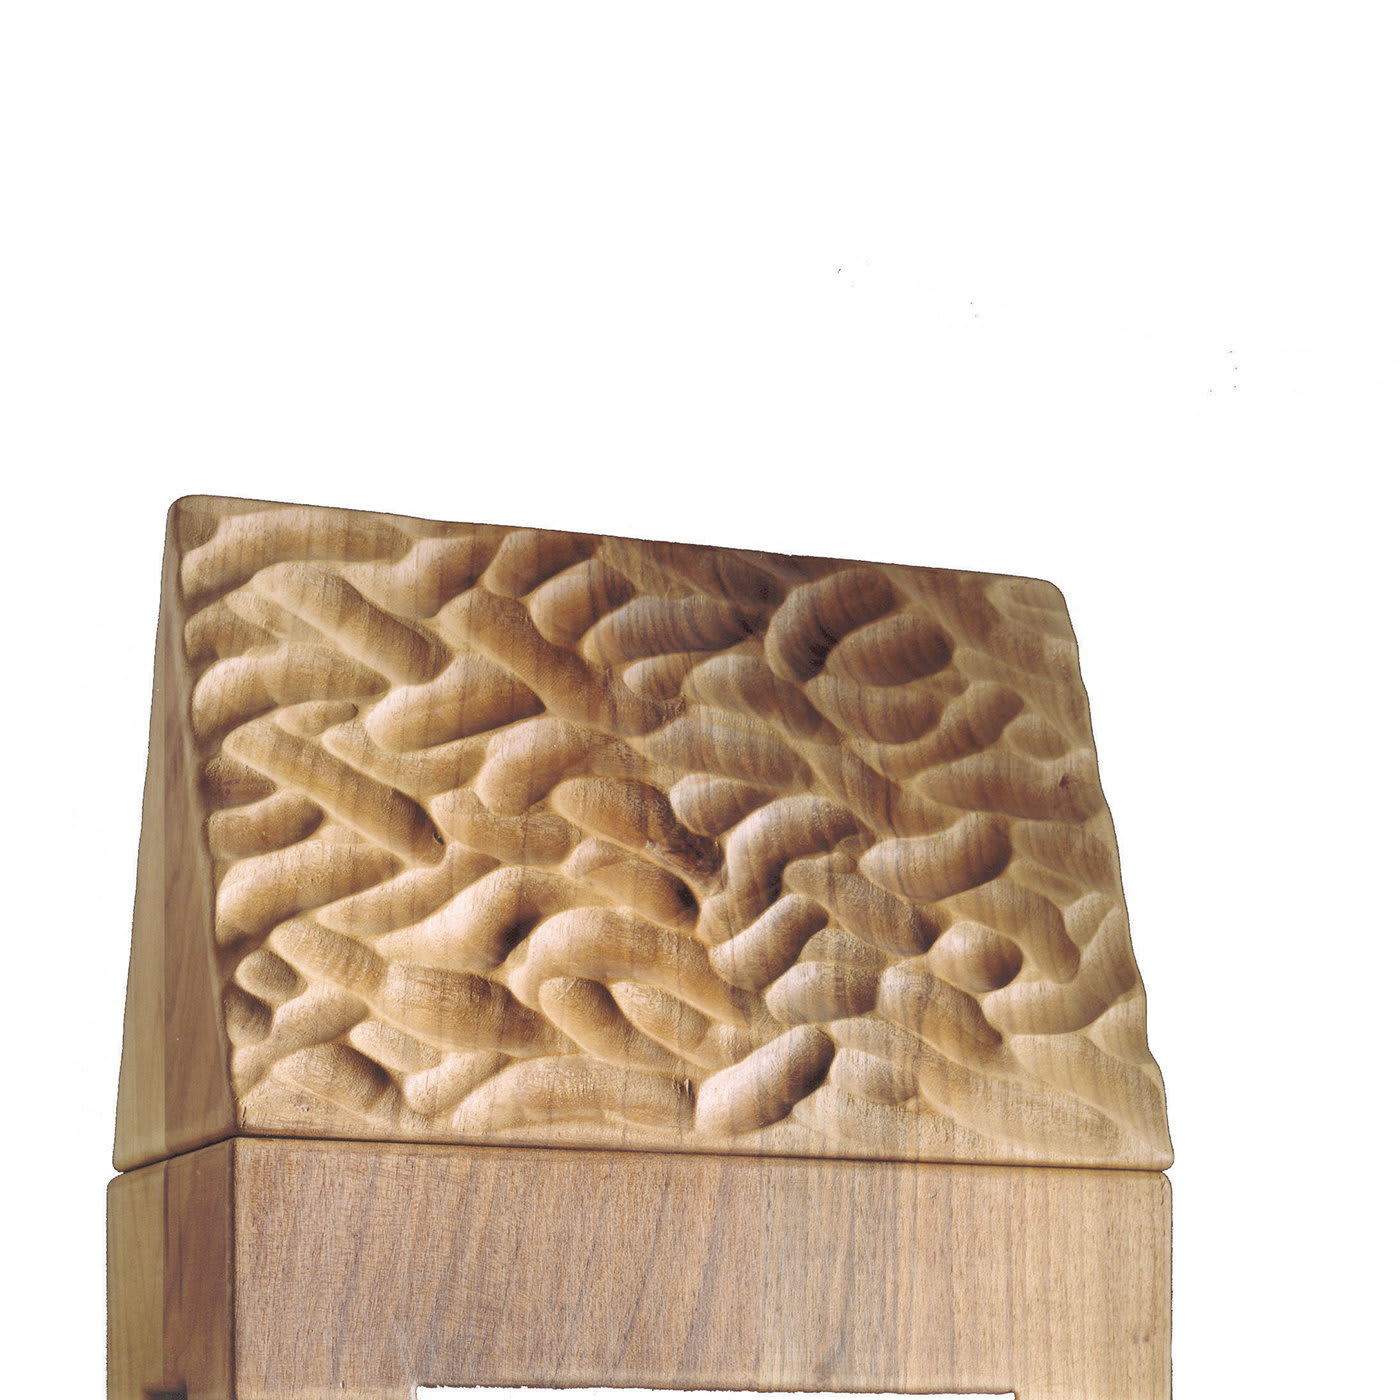 Bretone Limited Edition Box by Giuseppe Rivadossi - Serafino Zani